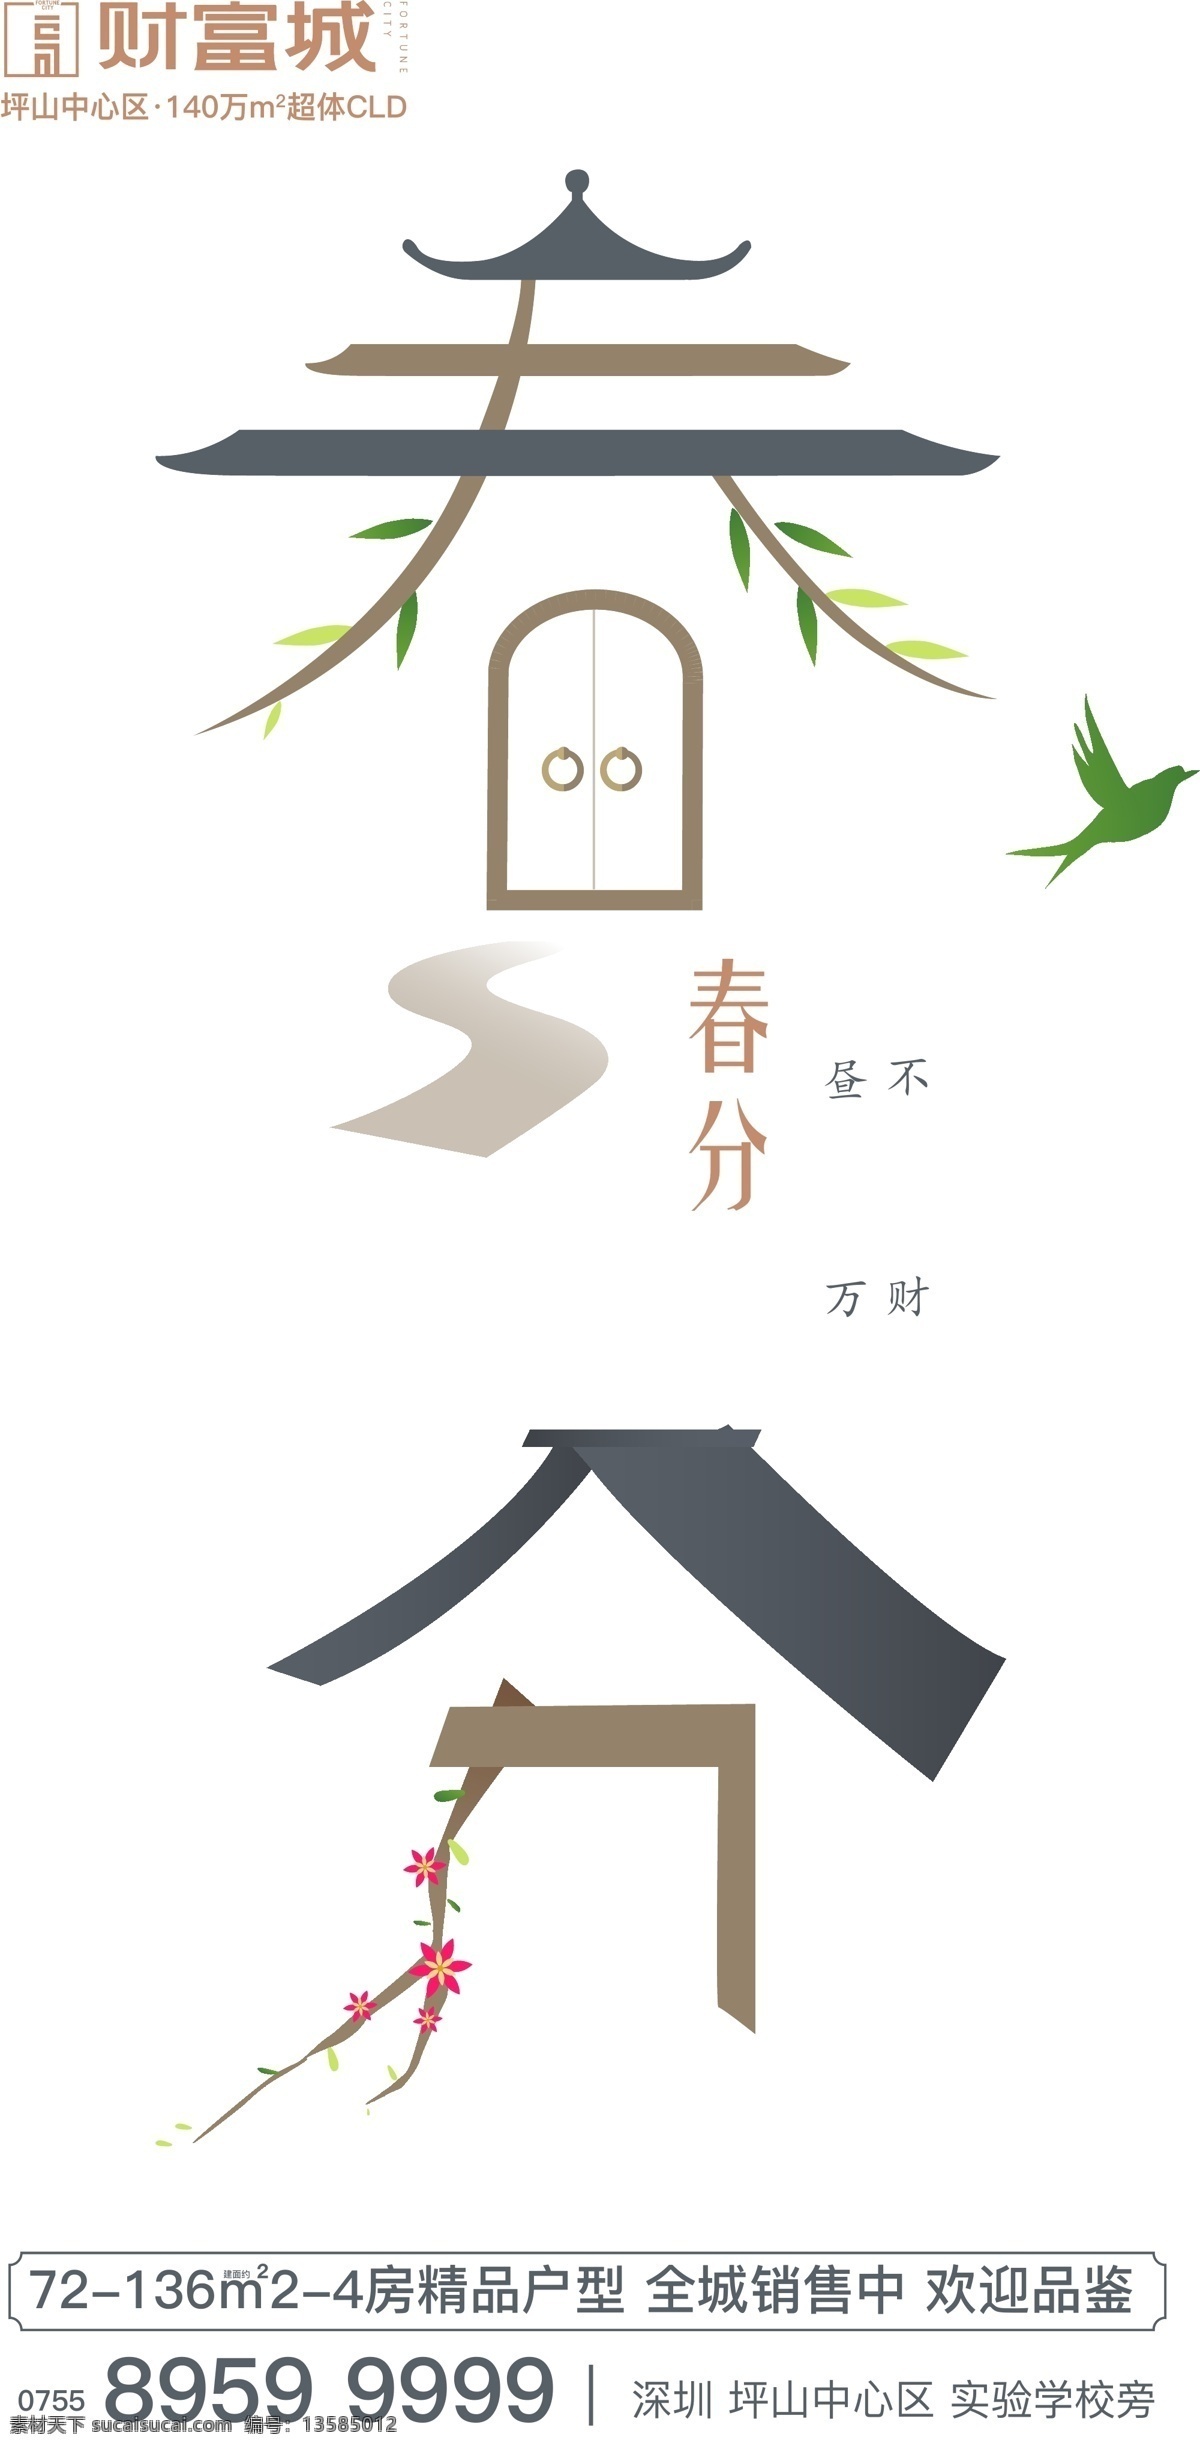 春分 节气 字体设计 燕子 房屋 传统 海报 文化艺术 传统文化